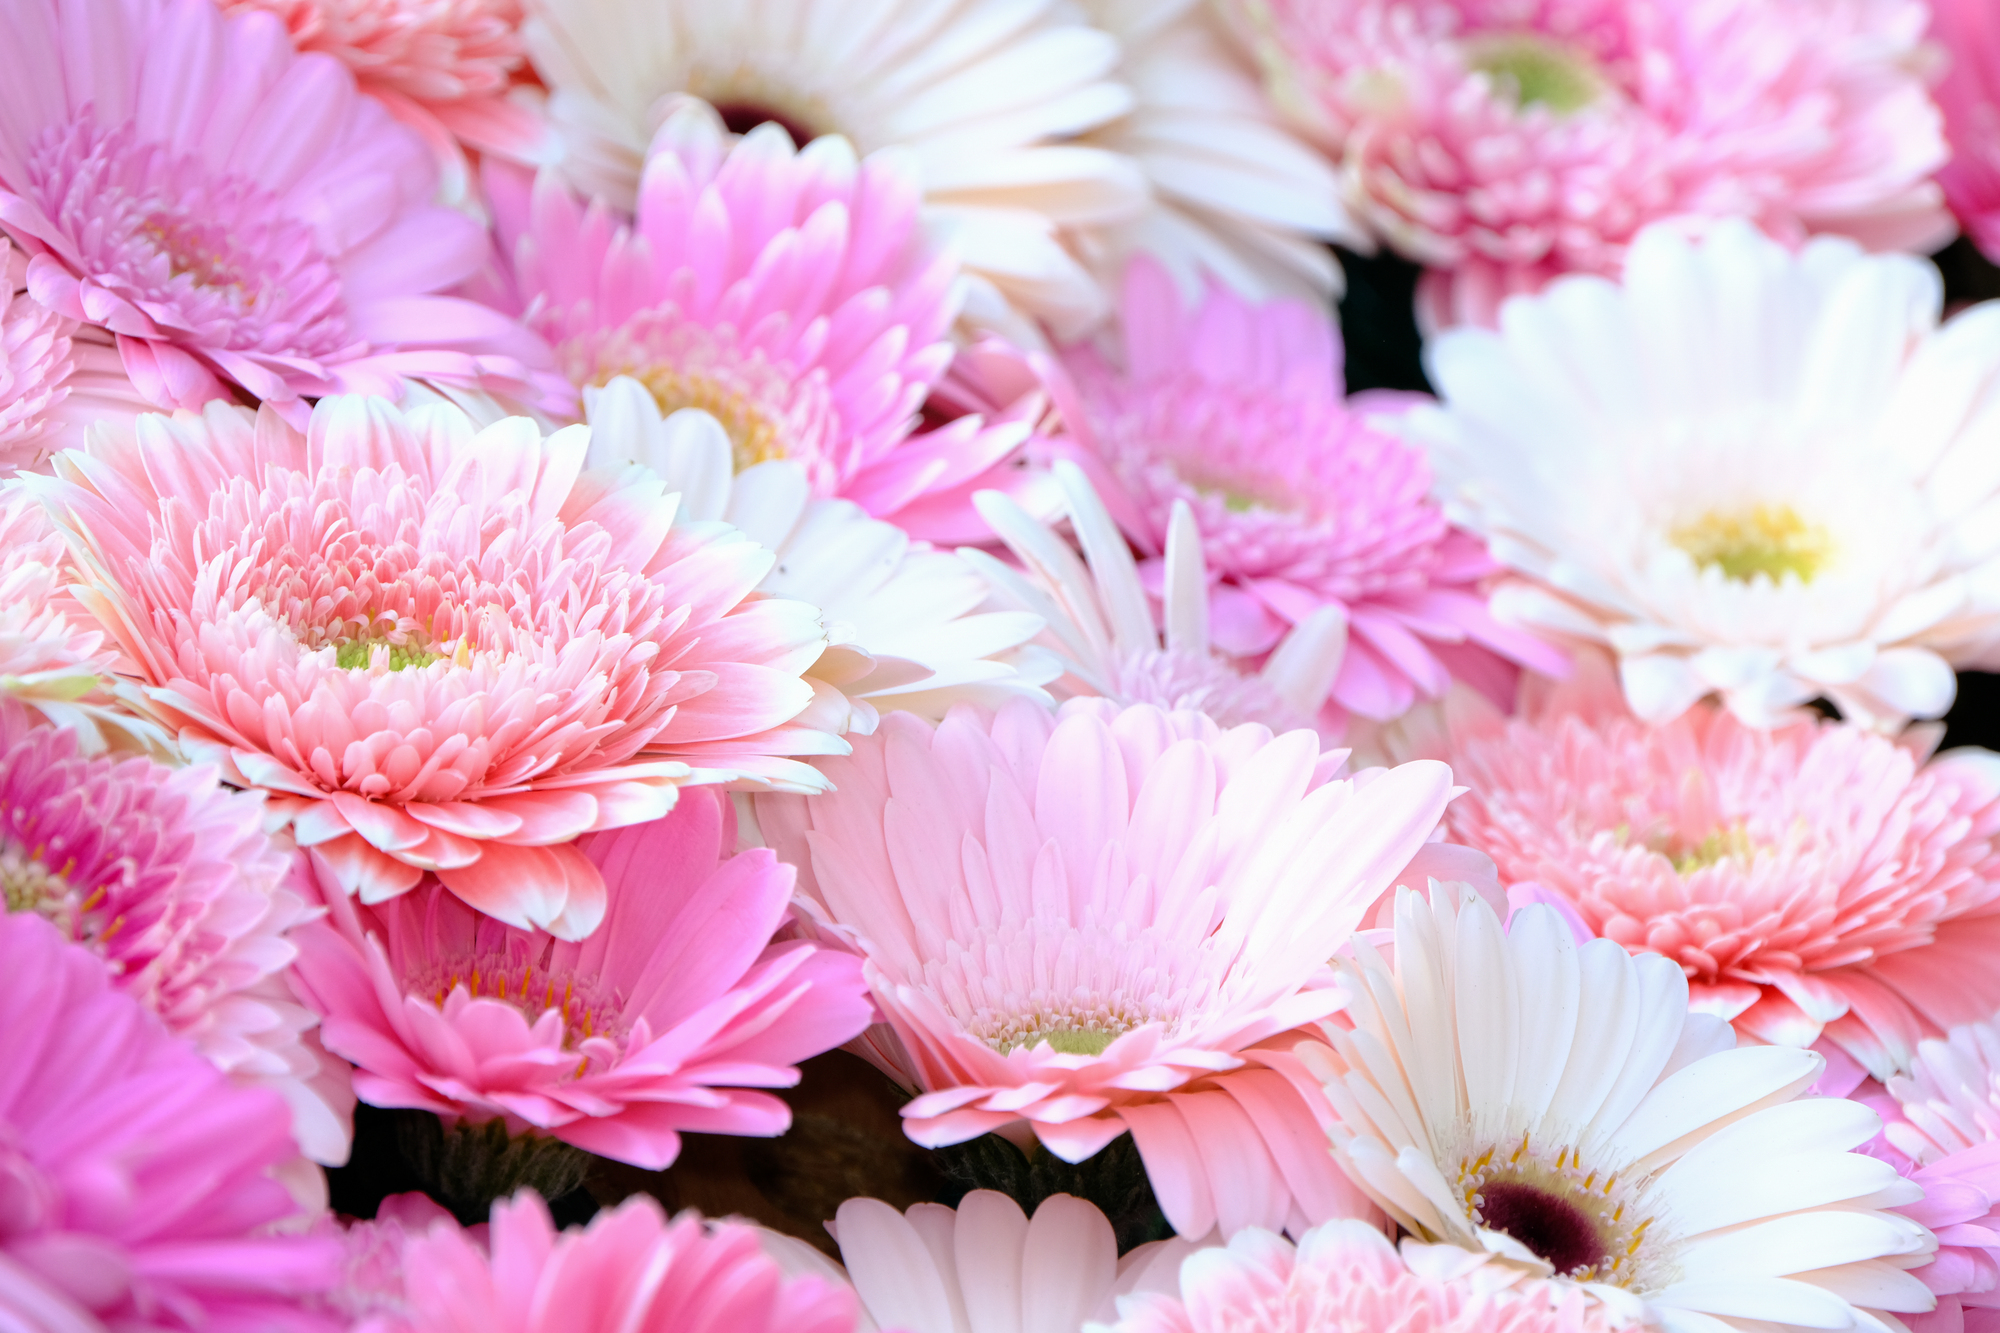 ロポーズにおすすめの花②ポジティブな花言葉が多い「ガーベラ」